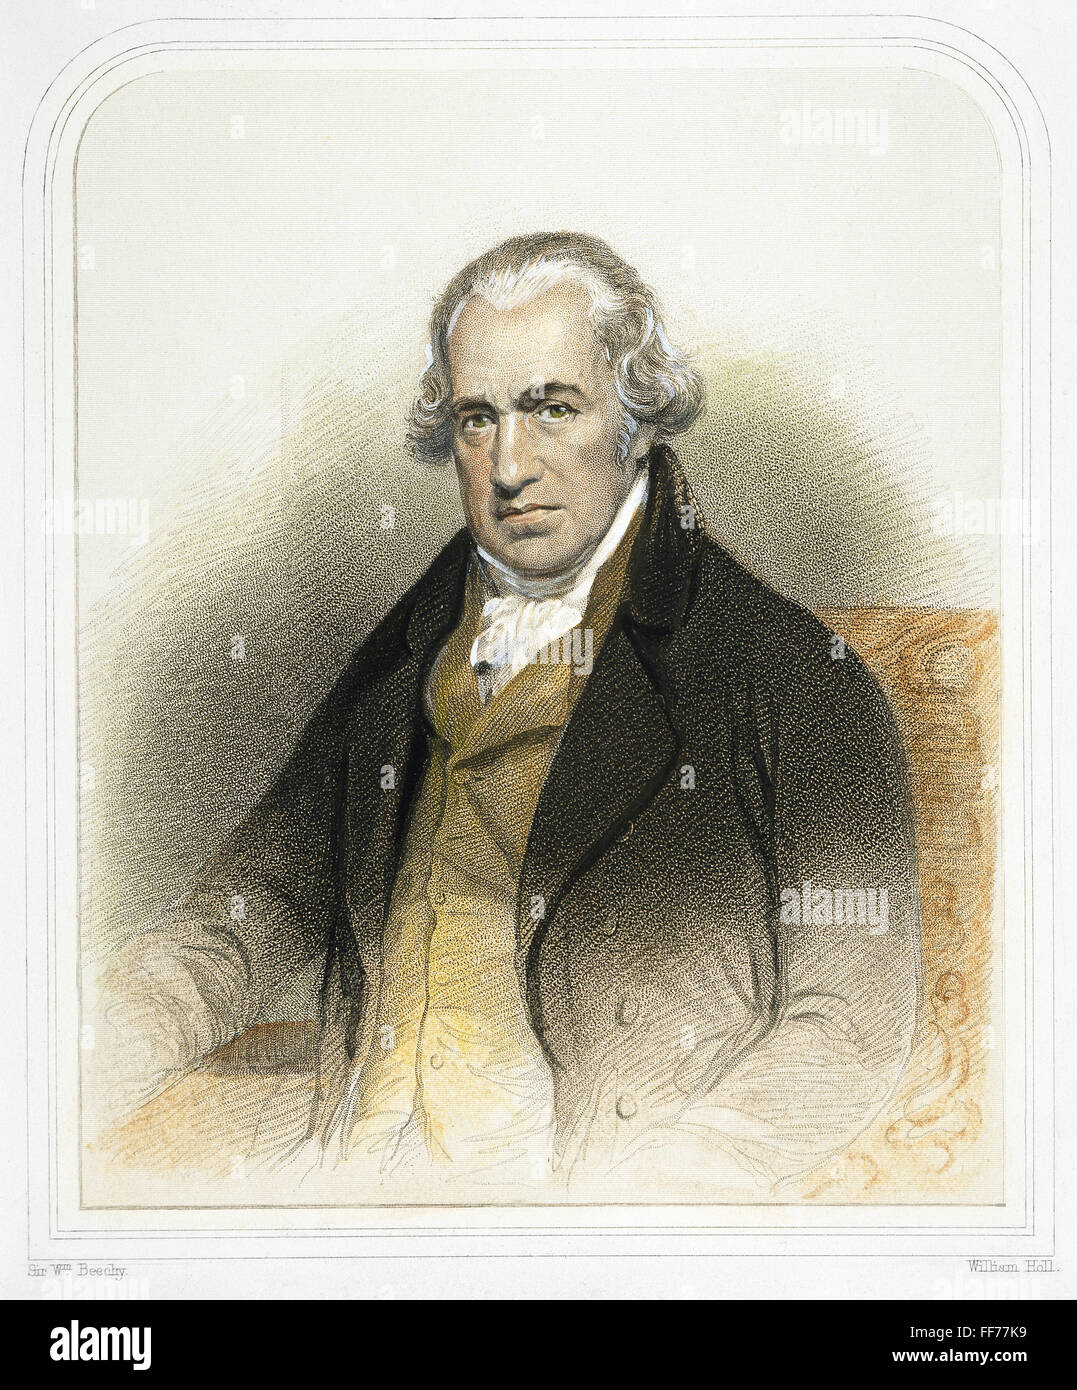 JAMES WATT (1736-1819). /nScottish Ingenieur und Erfinder. Stich nach einem Gemälde von Sir William Beechy Farbe. Stockfoto